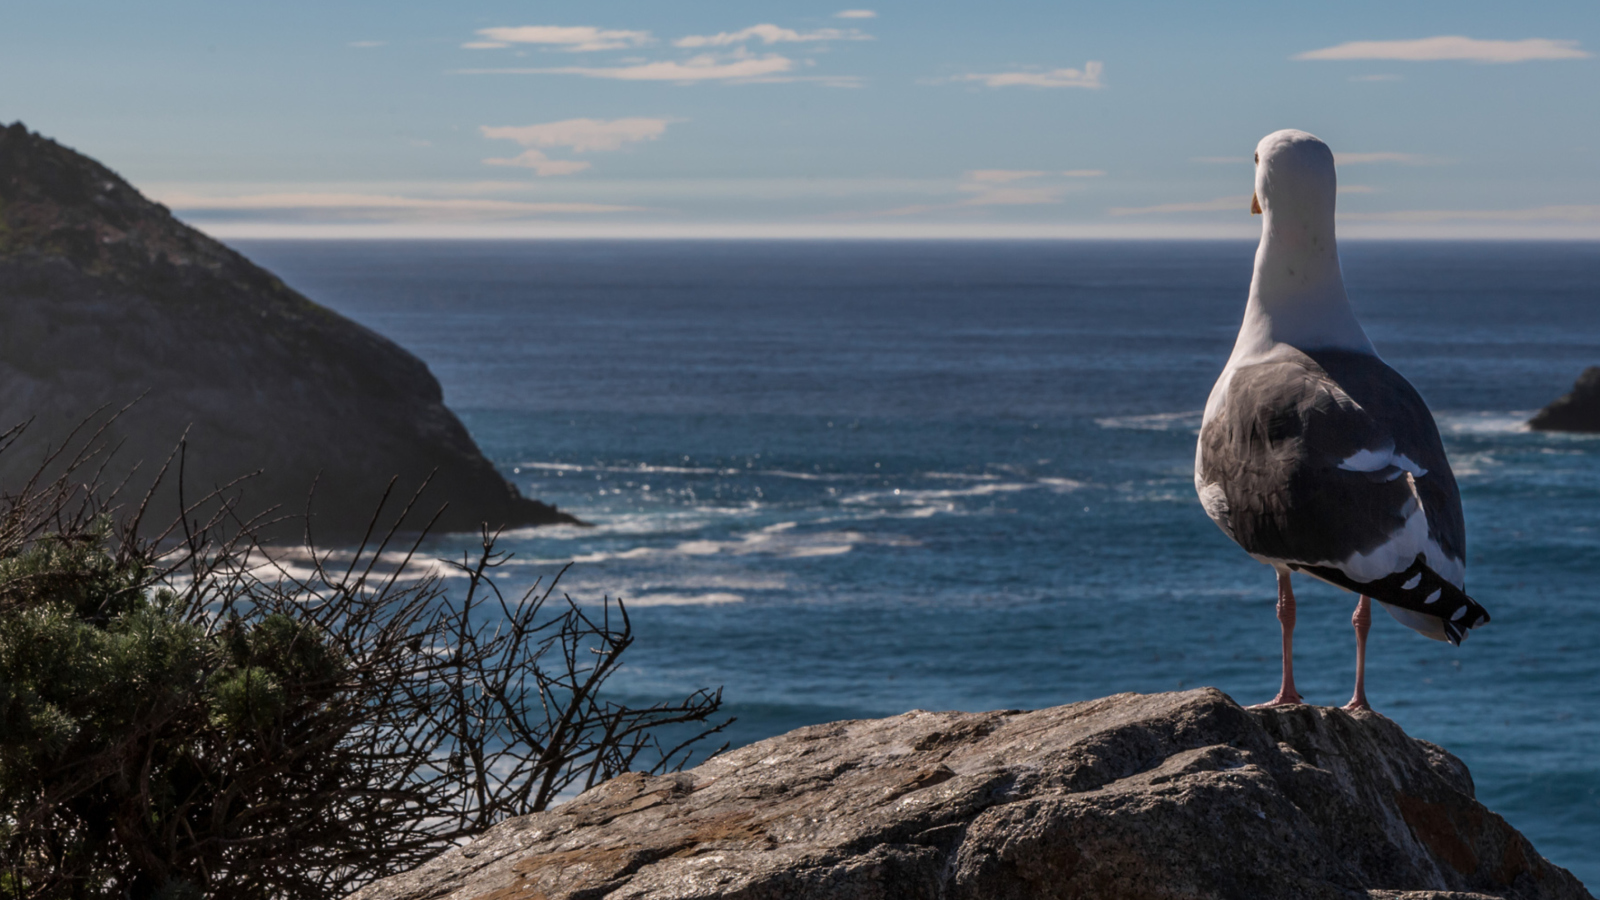 Обои Seagull Staring At Sea 1600x900